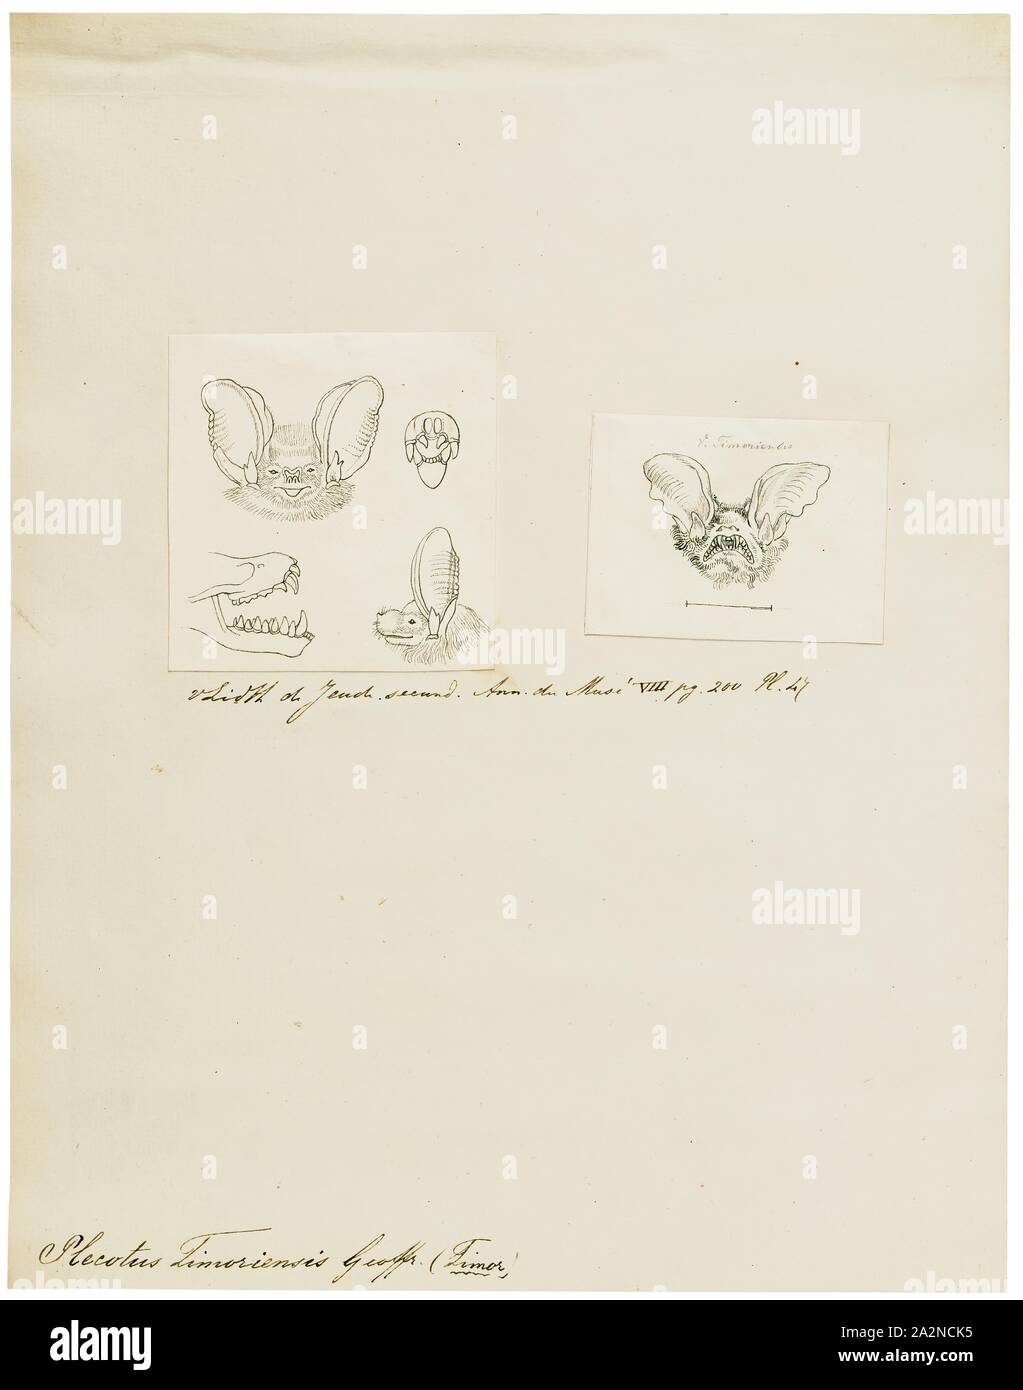 Plecotus timoriensis, stampa il genere Plecotus consiste di lungo-eared pipistrelli. Molte specie in genere sono solo state descritte e riconosciuto in questi ultimi anni., 1700-1880 Foto Stock